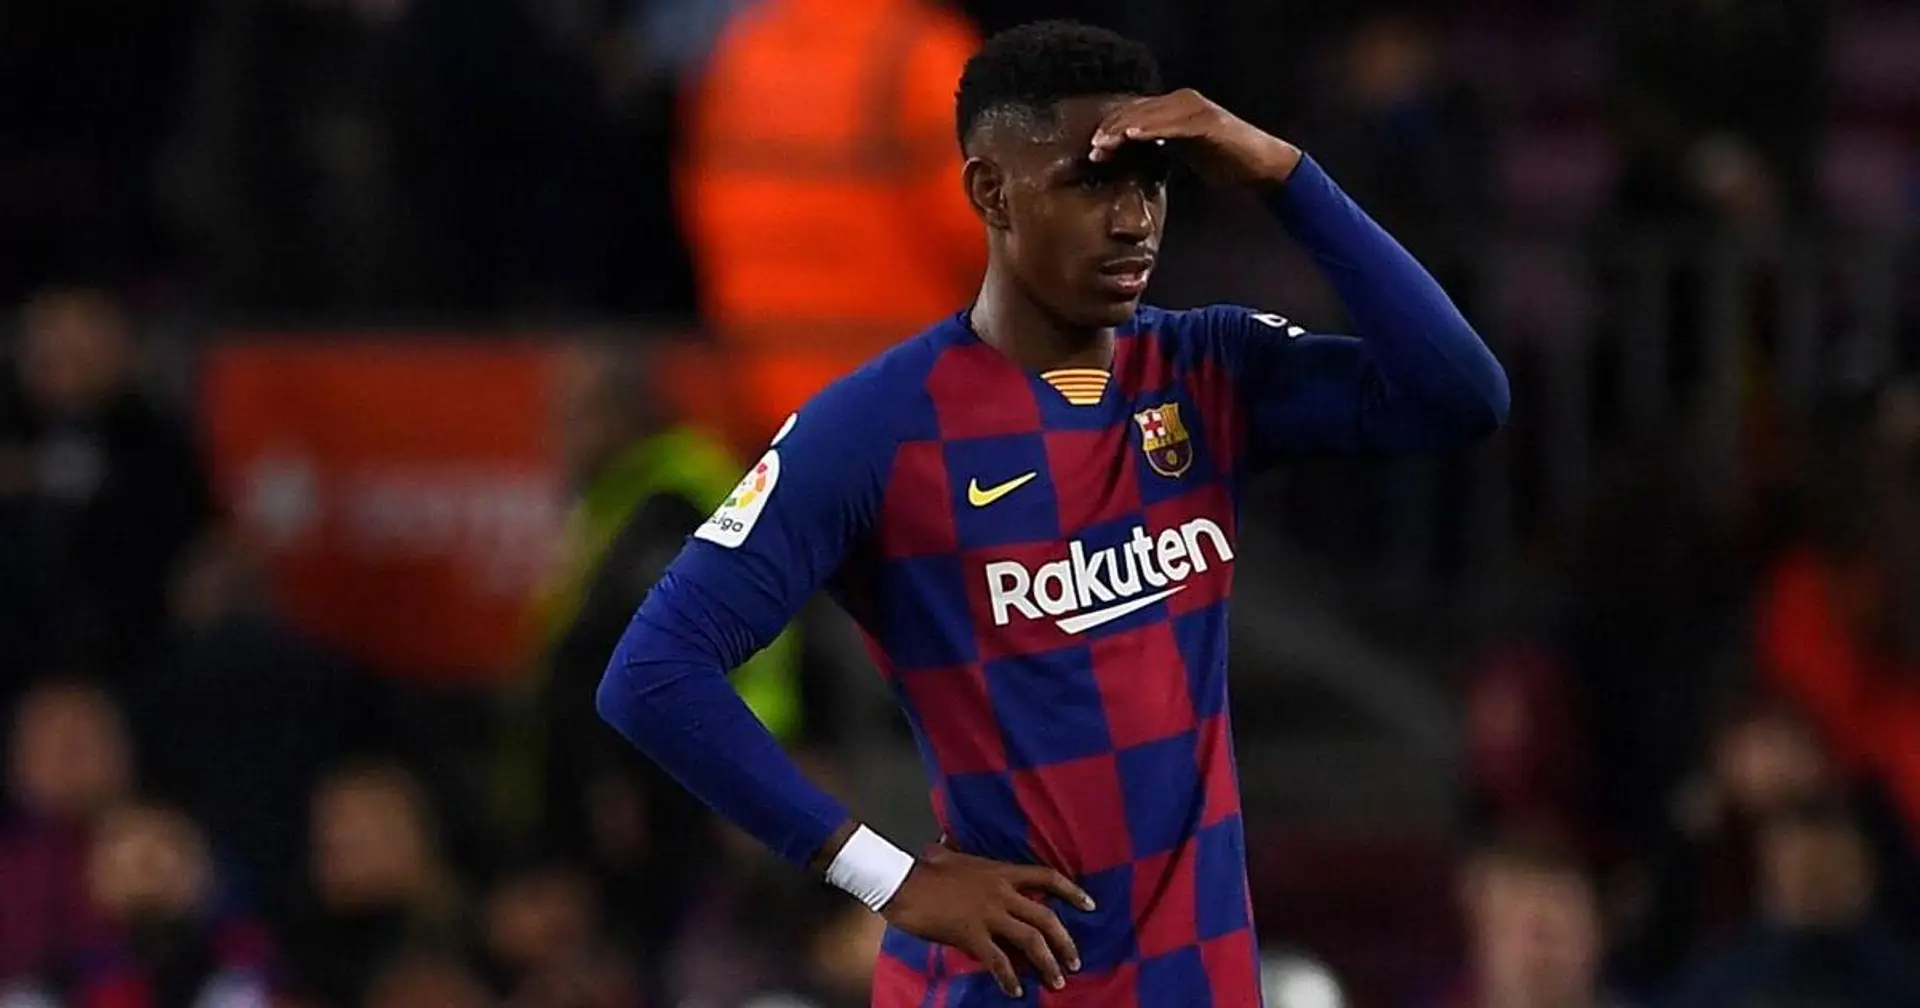 ❓DISKUSSIONSTHEMA: Hat Junior Firpo eine Zukunft bei Barça?